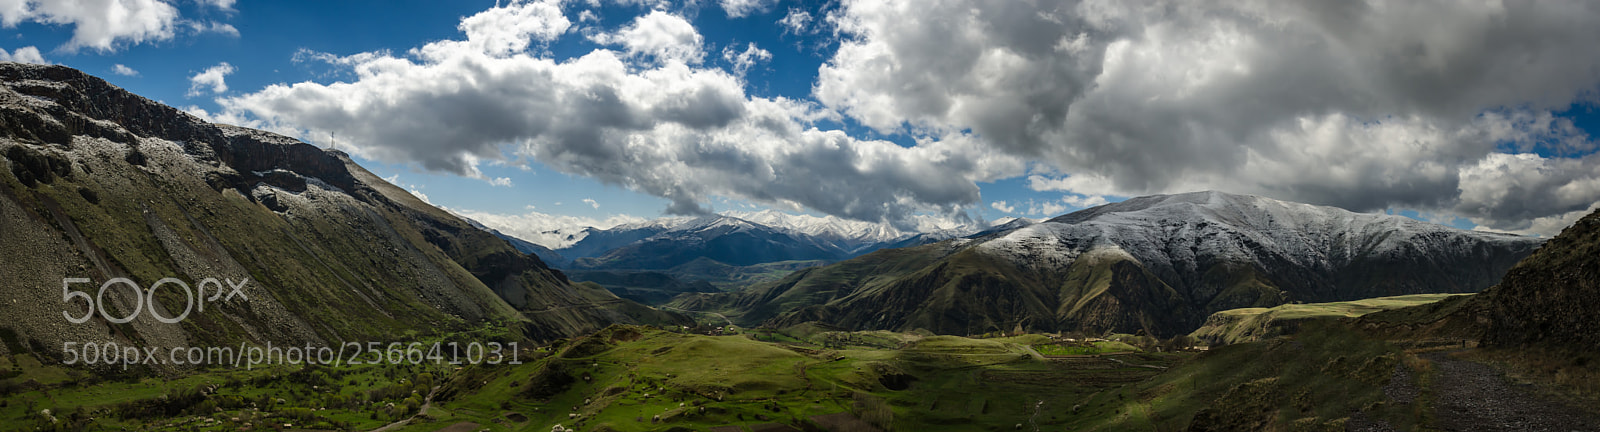 Nikon D7000 sample photo. An armenian panorama photography